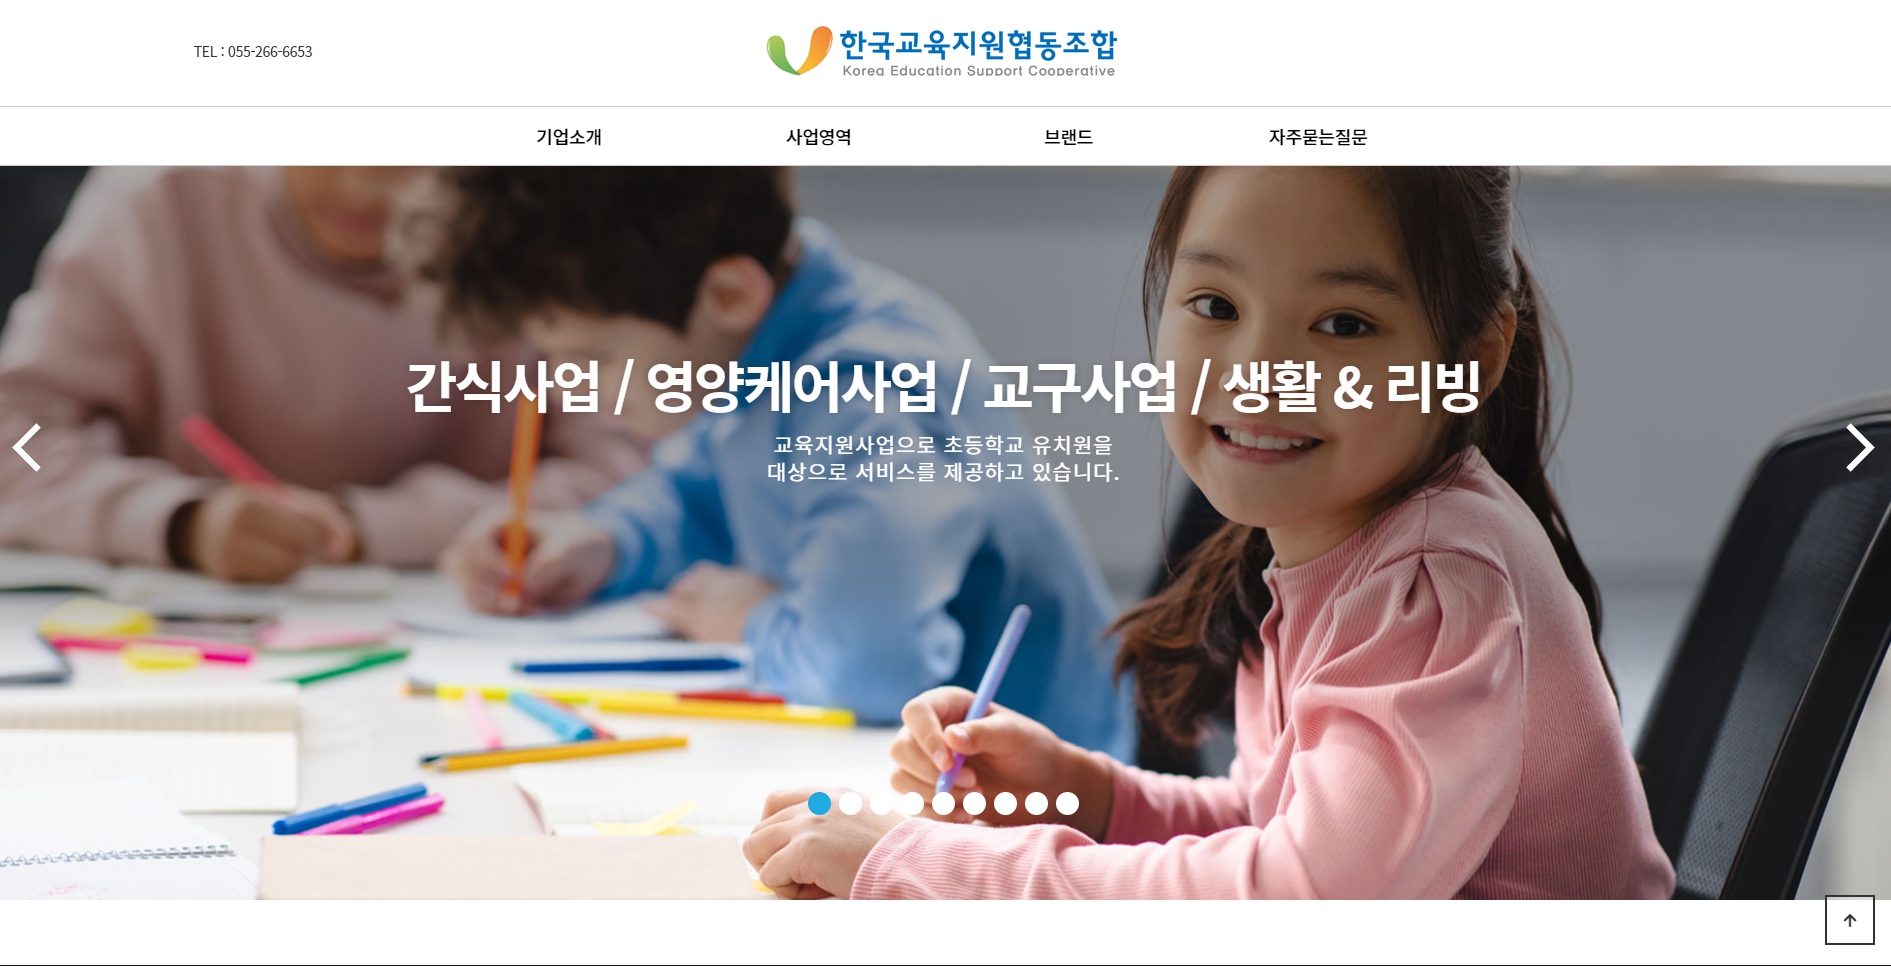 한국교육지원협동조합 스크릿샷